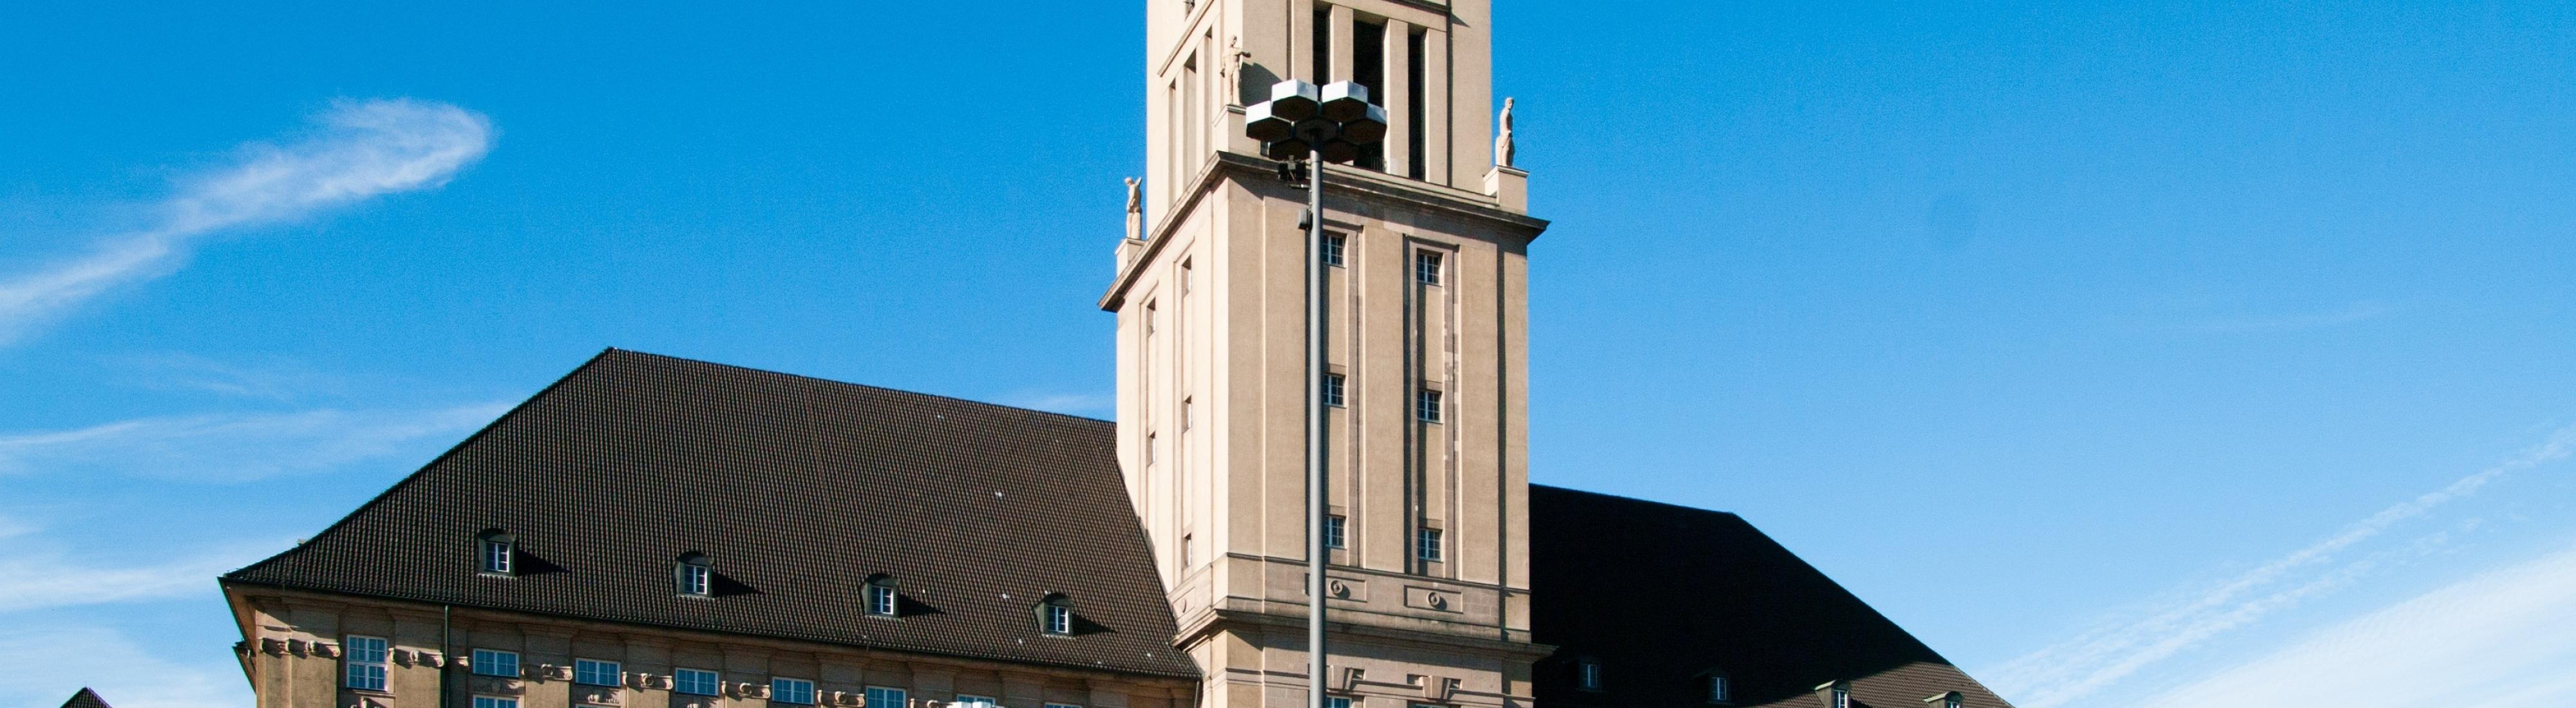 Rathaus Schöneberg Frontansicht